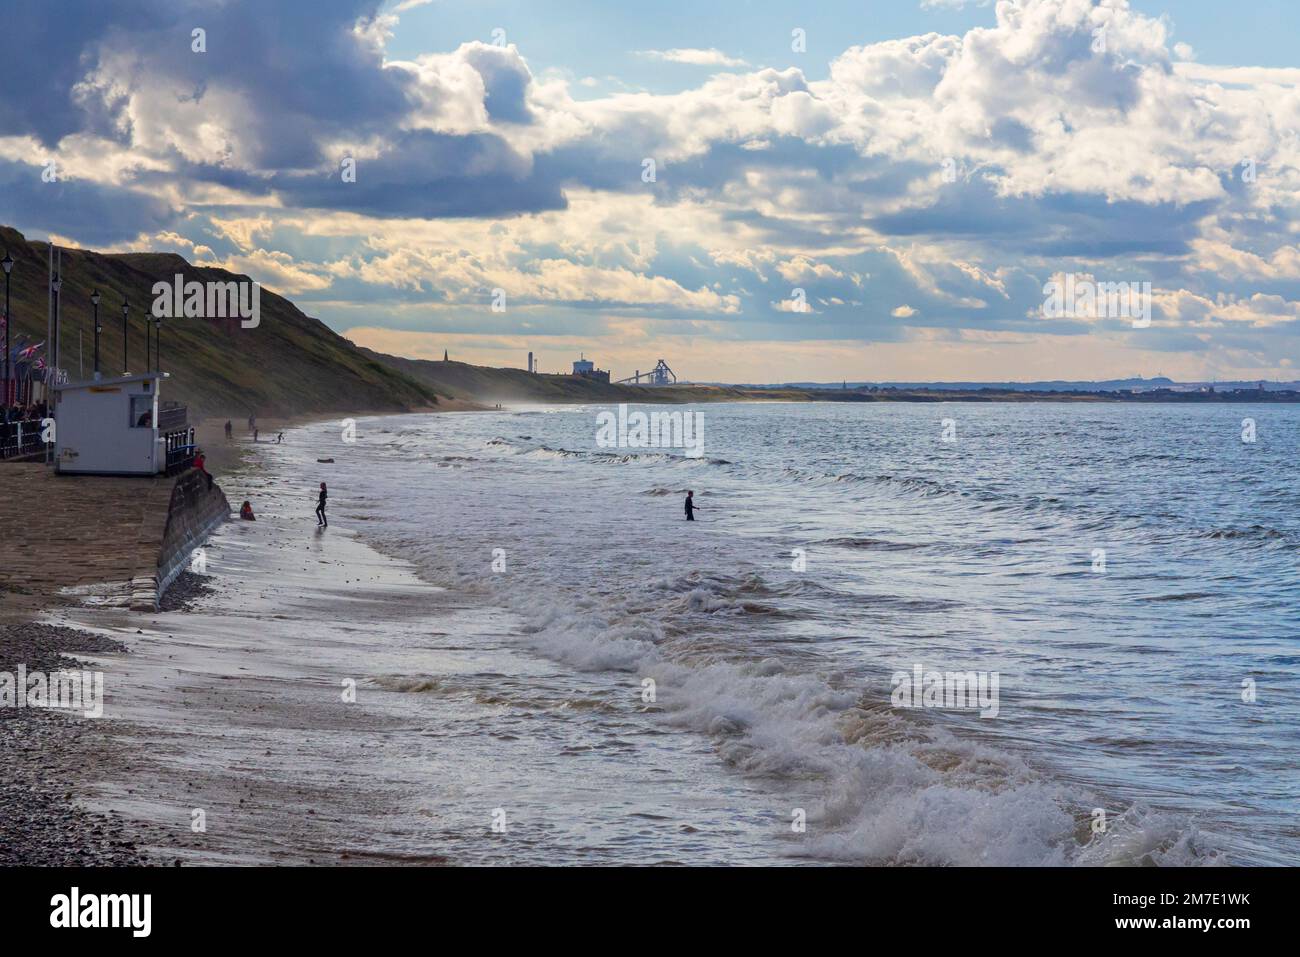 Vue d'été sur la mer et la plage au nord de Saltburn-by-the-Sea près de Redcar dans le NorthYorkshire Angleterre Royaume-Uni. Banque D'Images